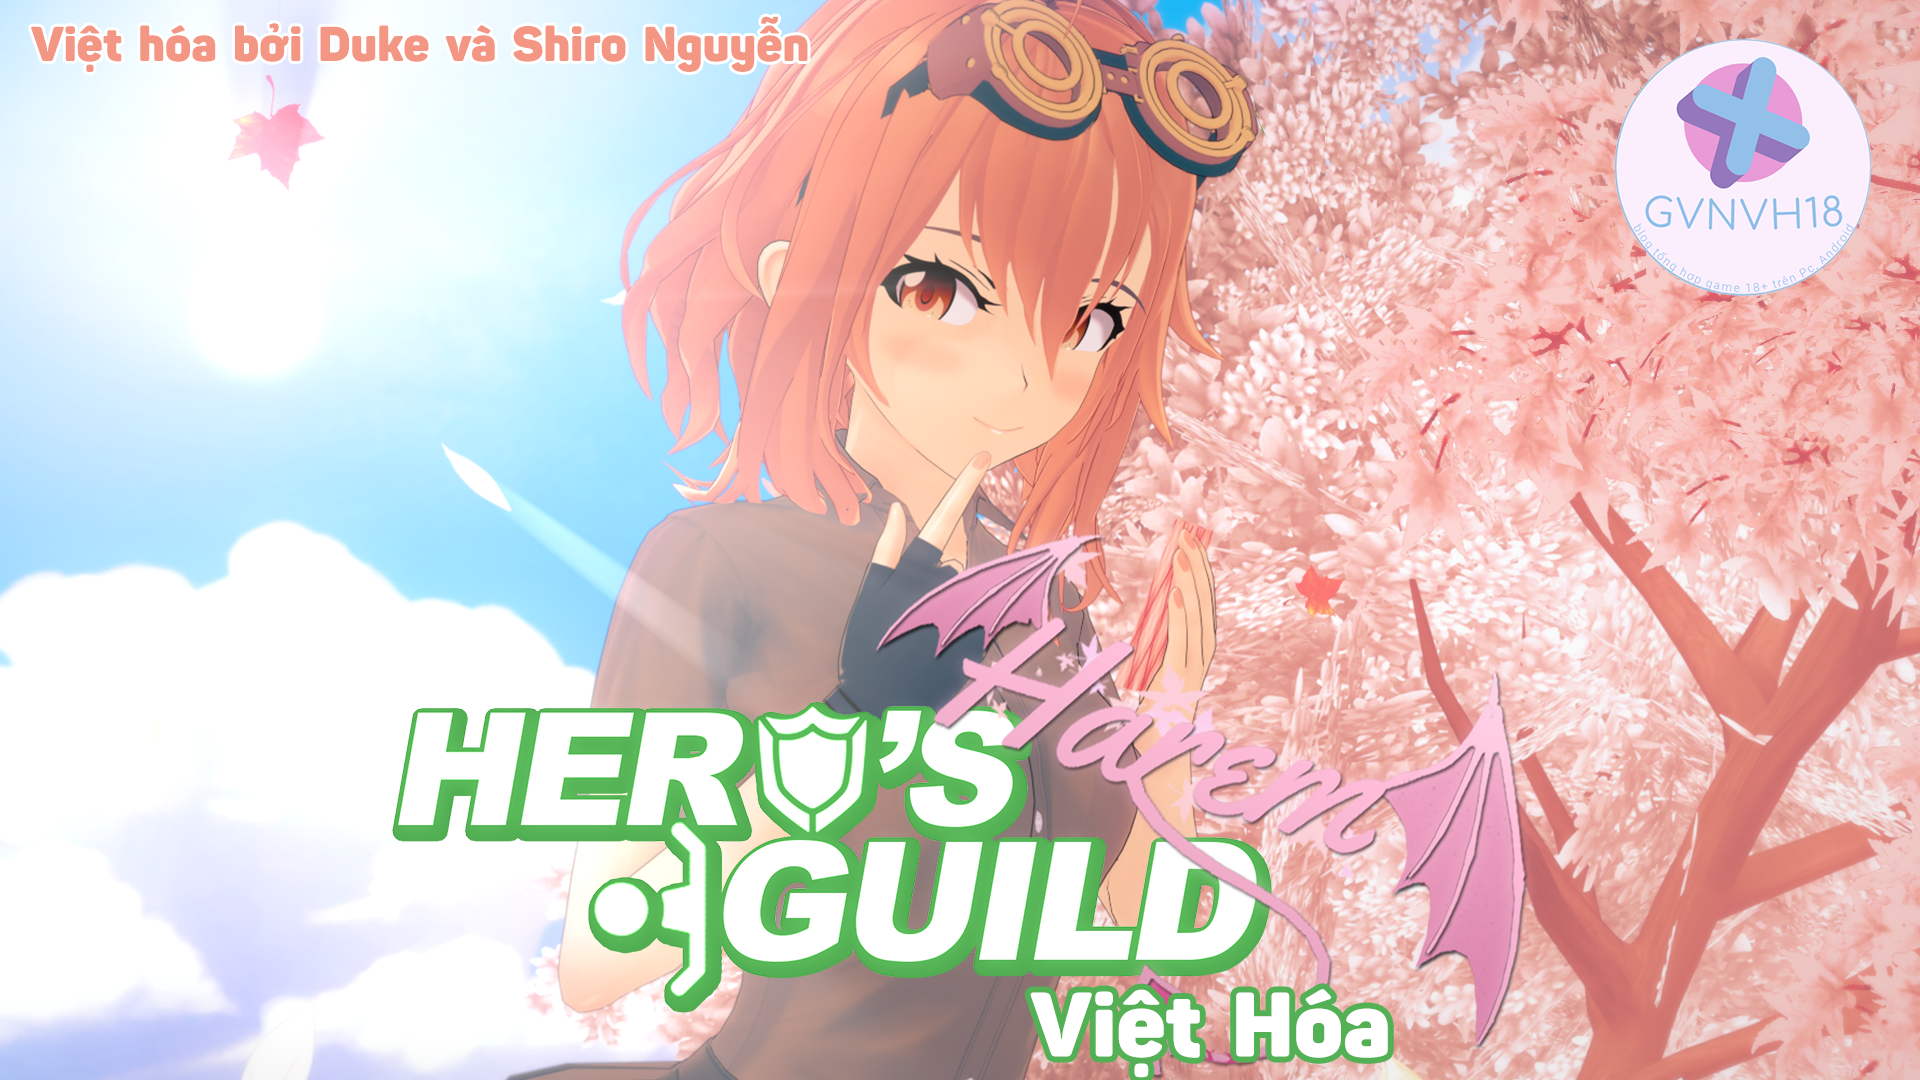 [18+ Việt Hóa] Hero's Harem Guild – Anh Hùng Bất Đắc Dĩ Và Cuộc Sống Mới Cùng Dàn Harem Xinh Đẹp | PC, Android